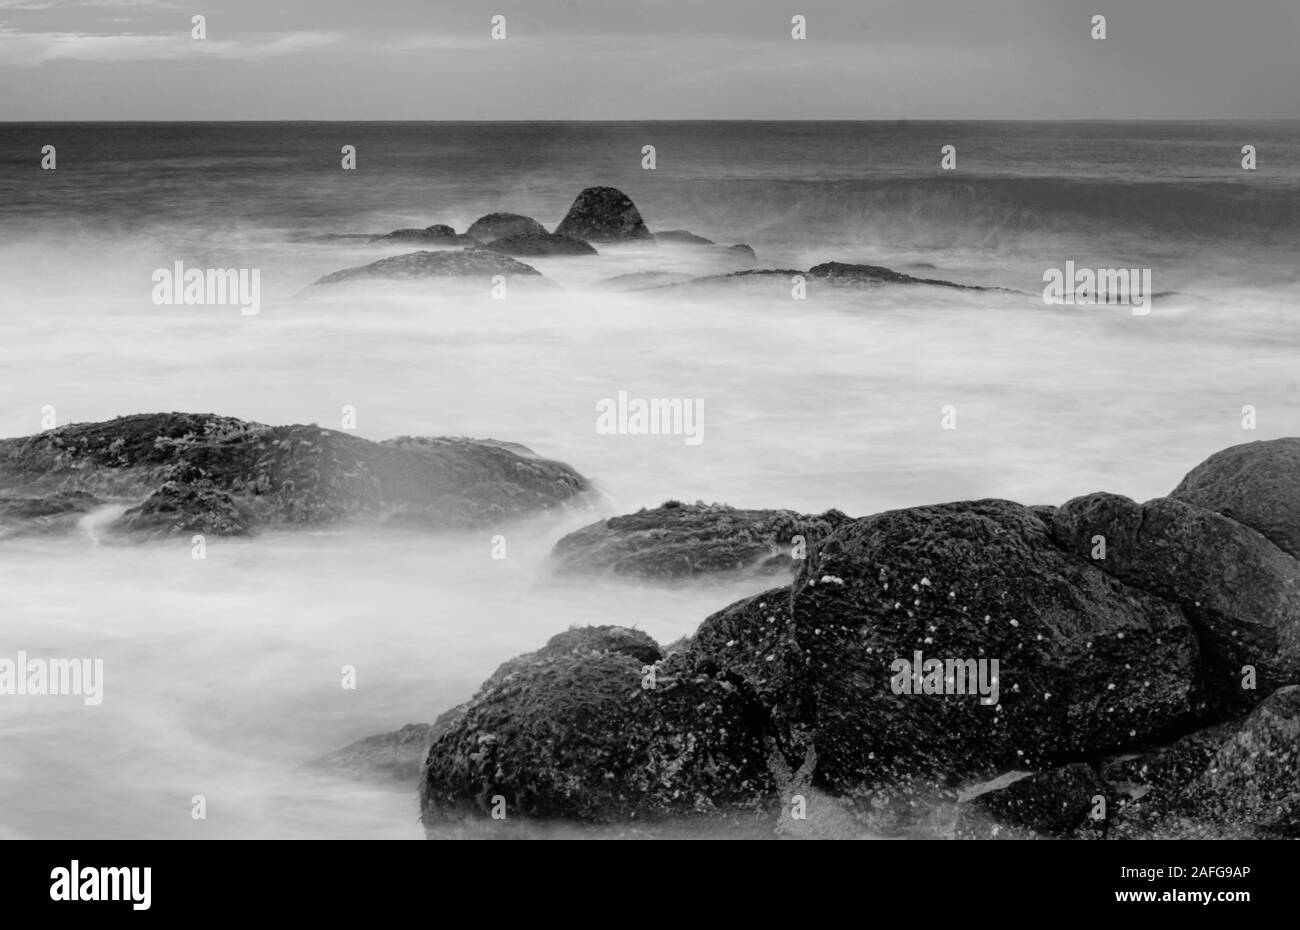 Blanco y Negro Ondas Playa - Sri Lanka - fotografía monocromo - Obturador lento - fotografía de larga exposición fotografía Foto de stock